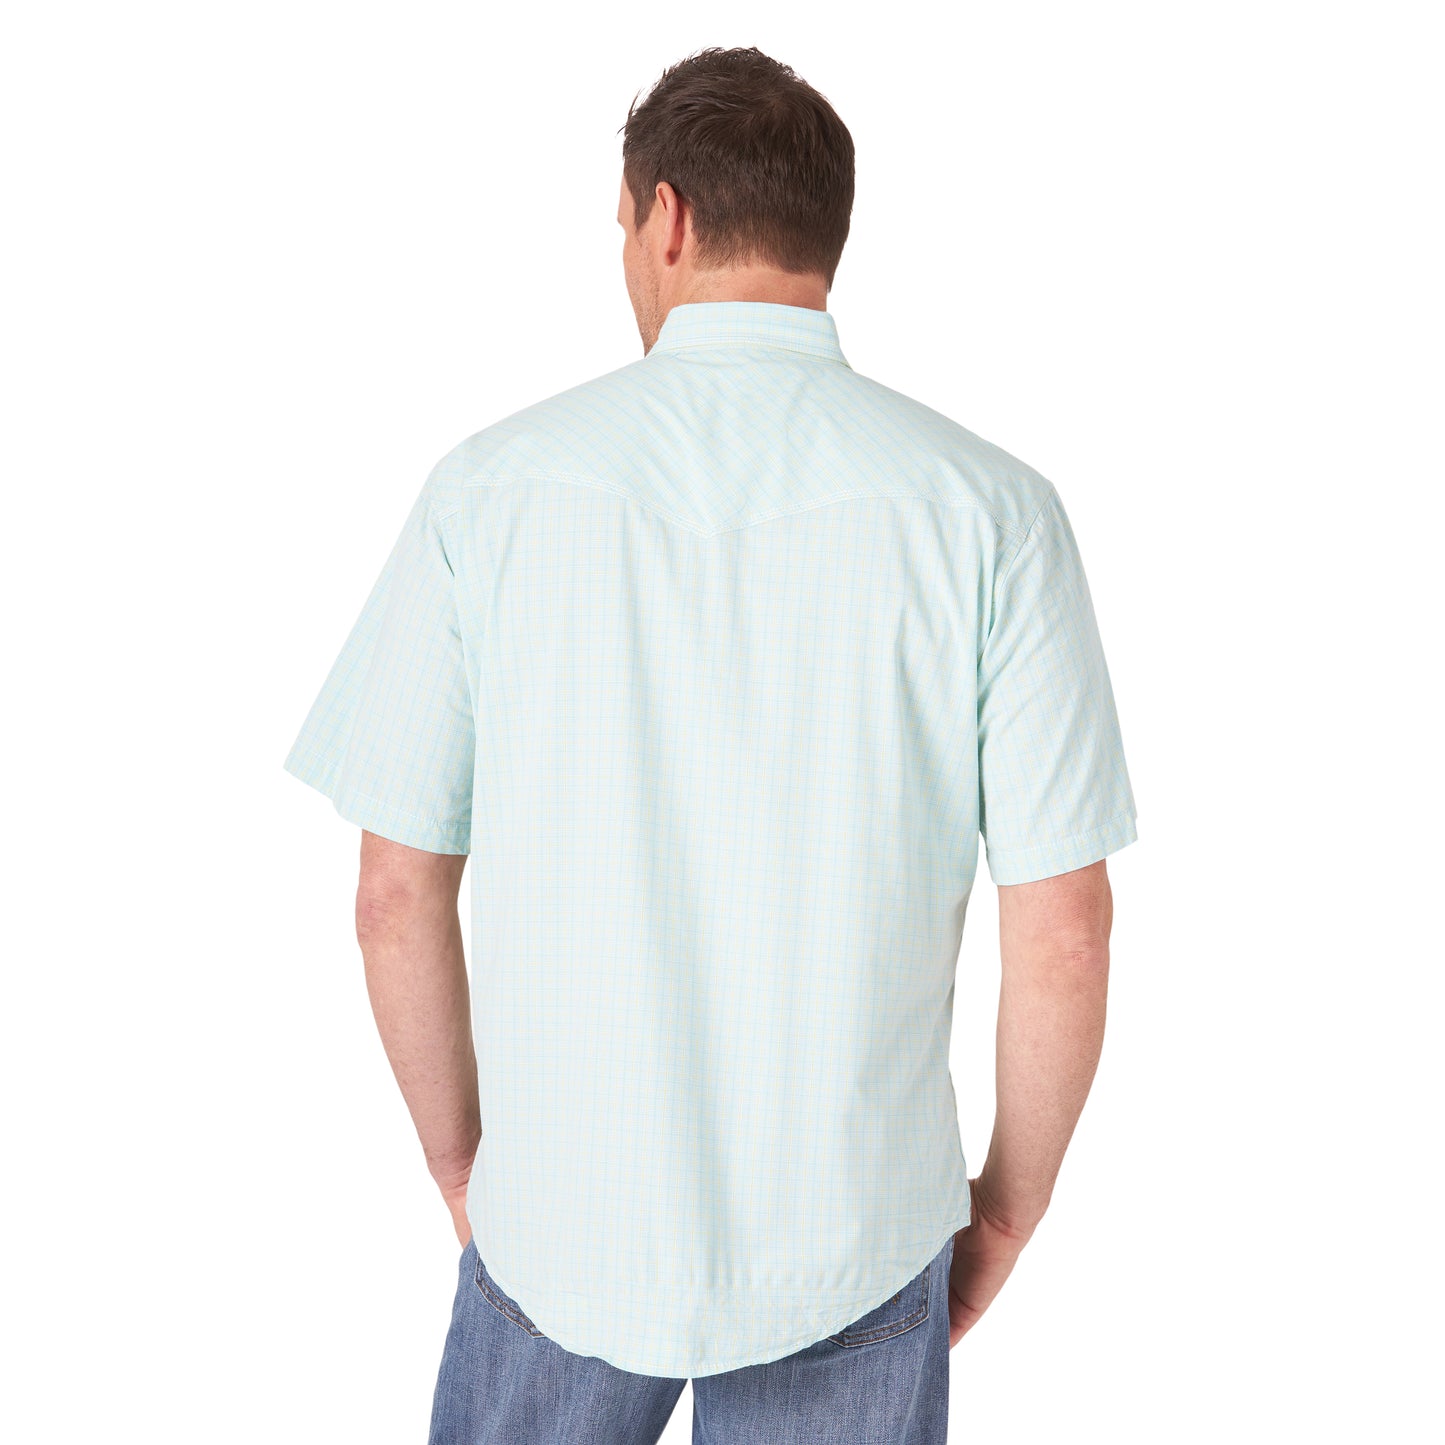 mjc321m Men's 20X Short Sleeved Shirt by Wrangler